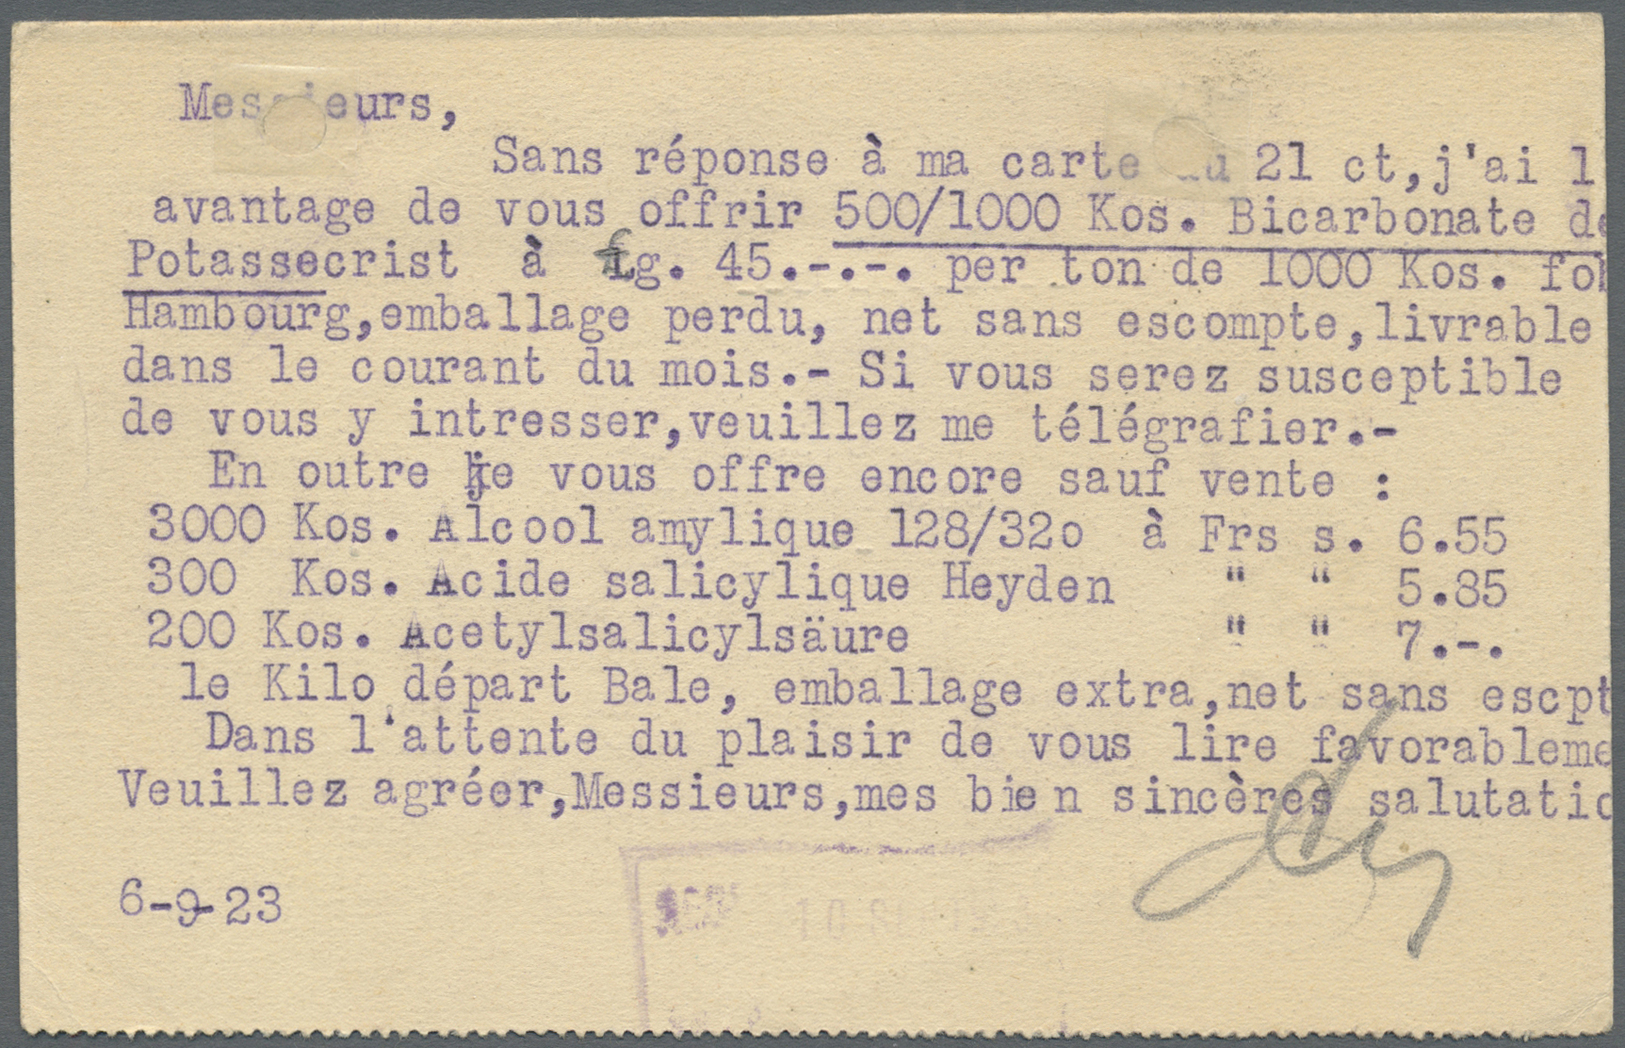 Br Deutsches Reich - Lokalausgaben 1918/23: MANNHEIM 4: 1923, Gebührenzettel "Taxe Percue" Auf Auslands - Lettres & Documents